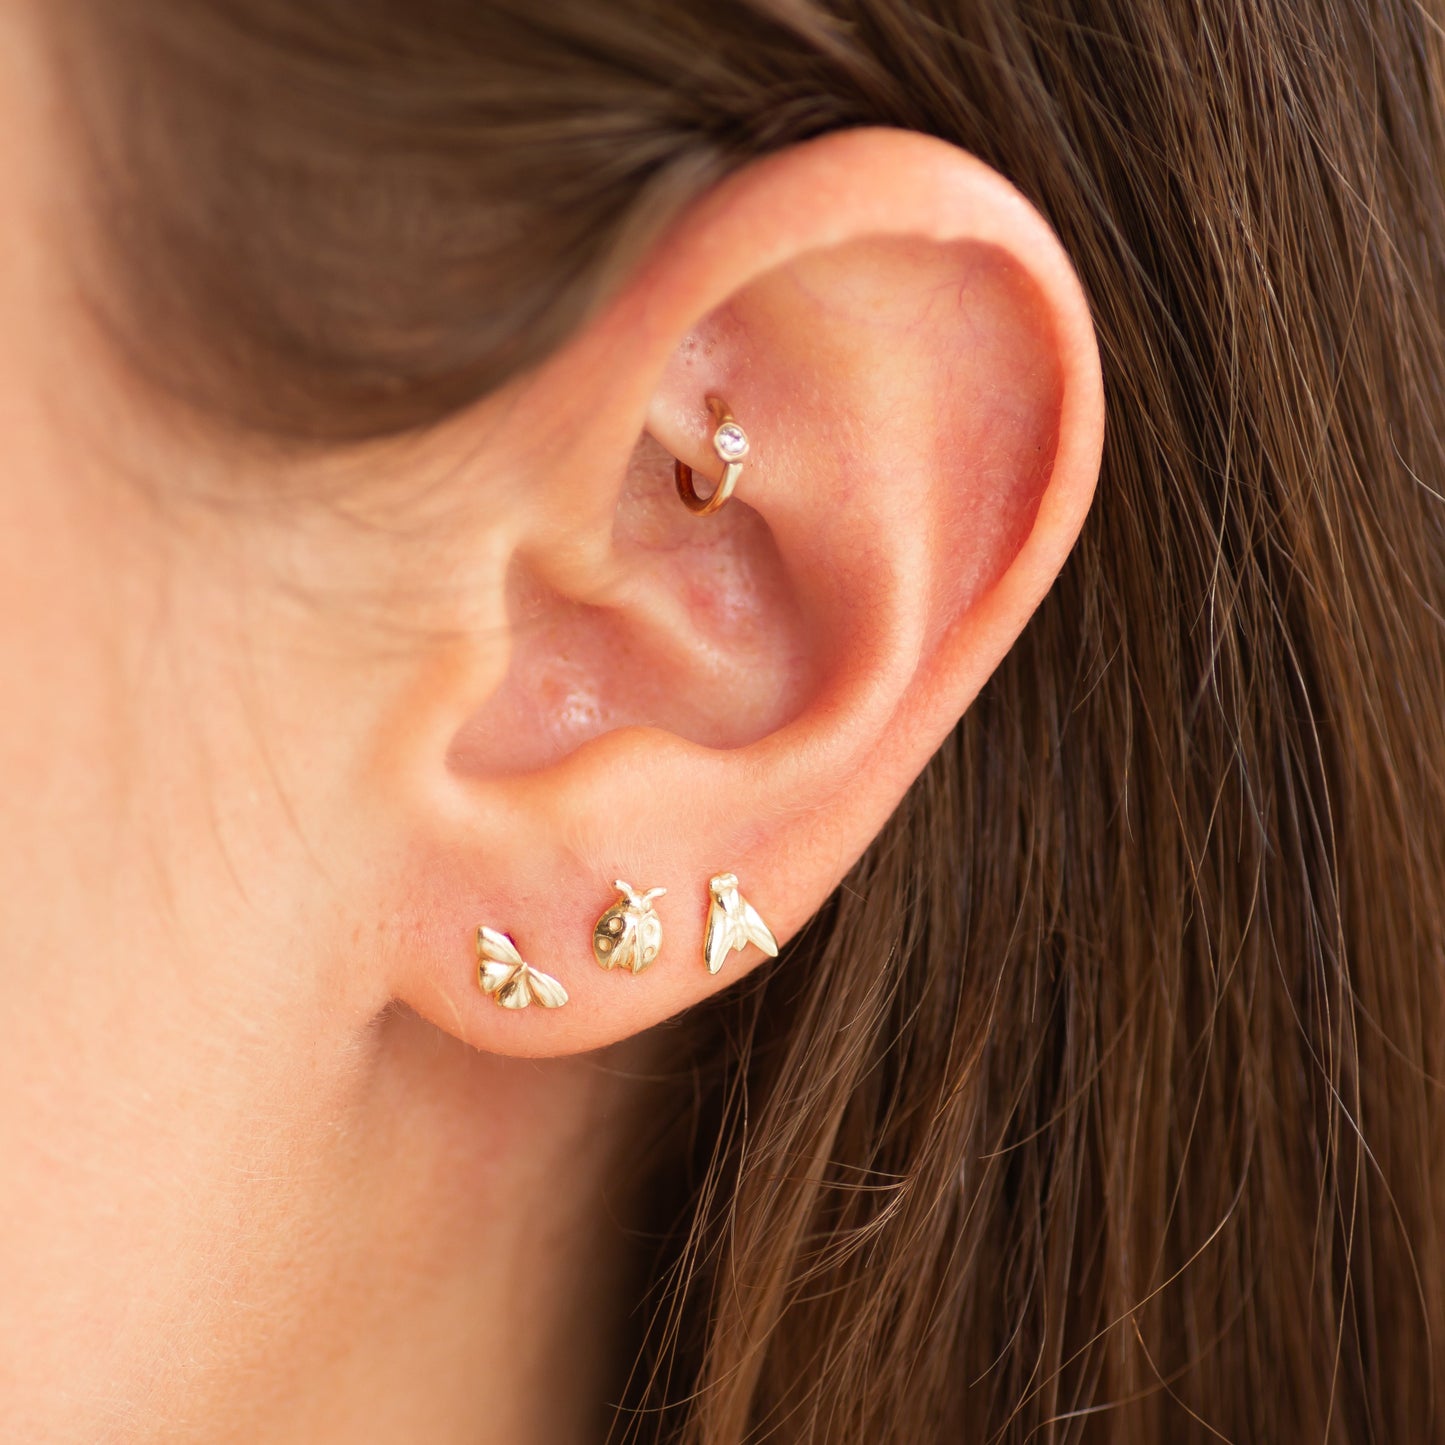 Ladybug earring stud 14k gold